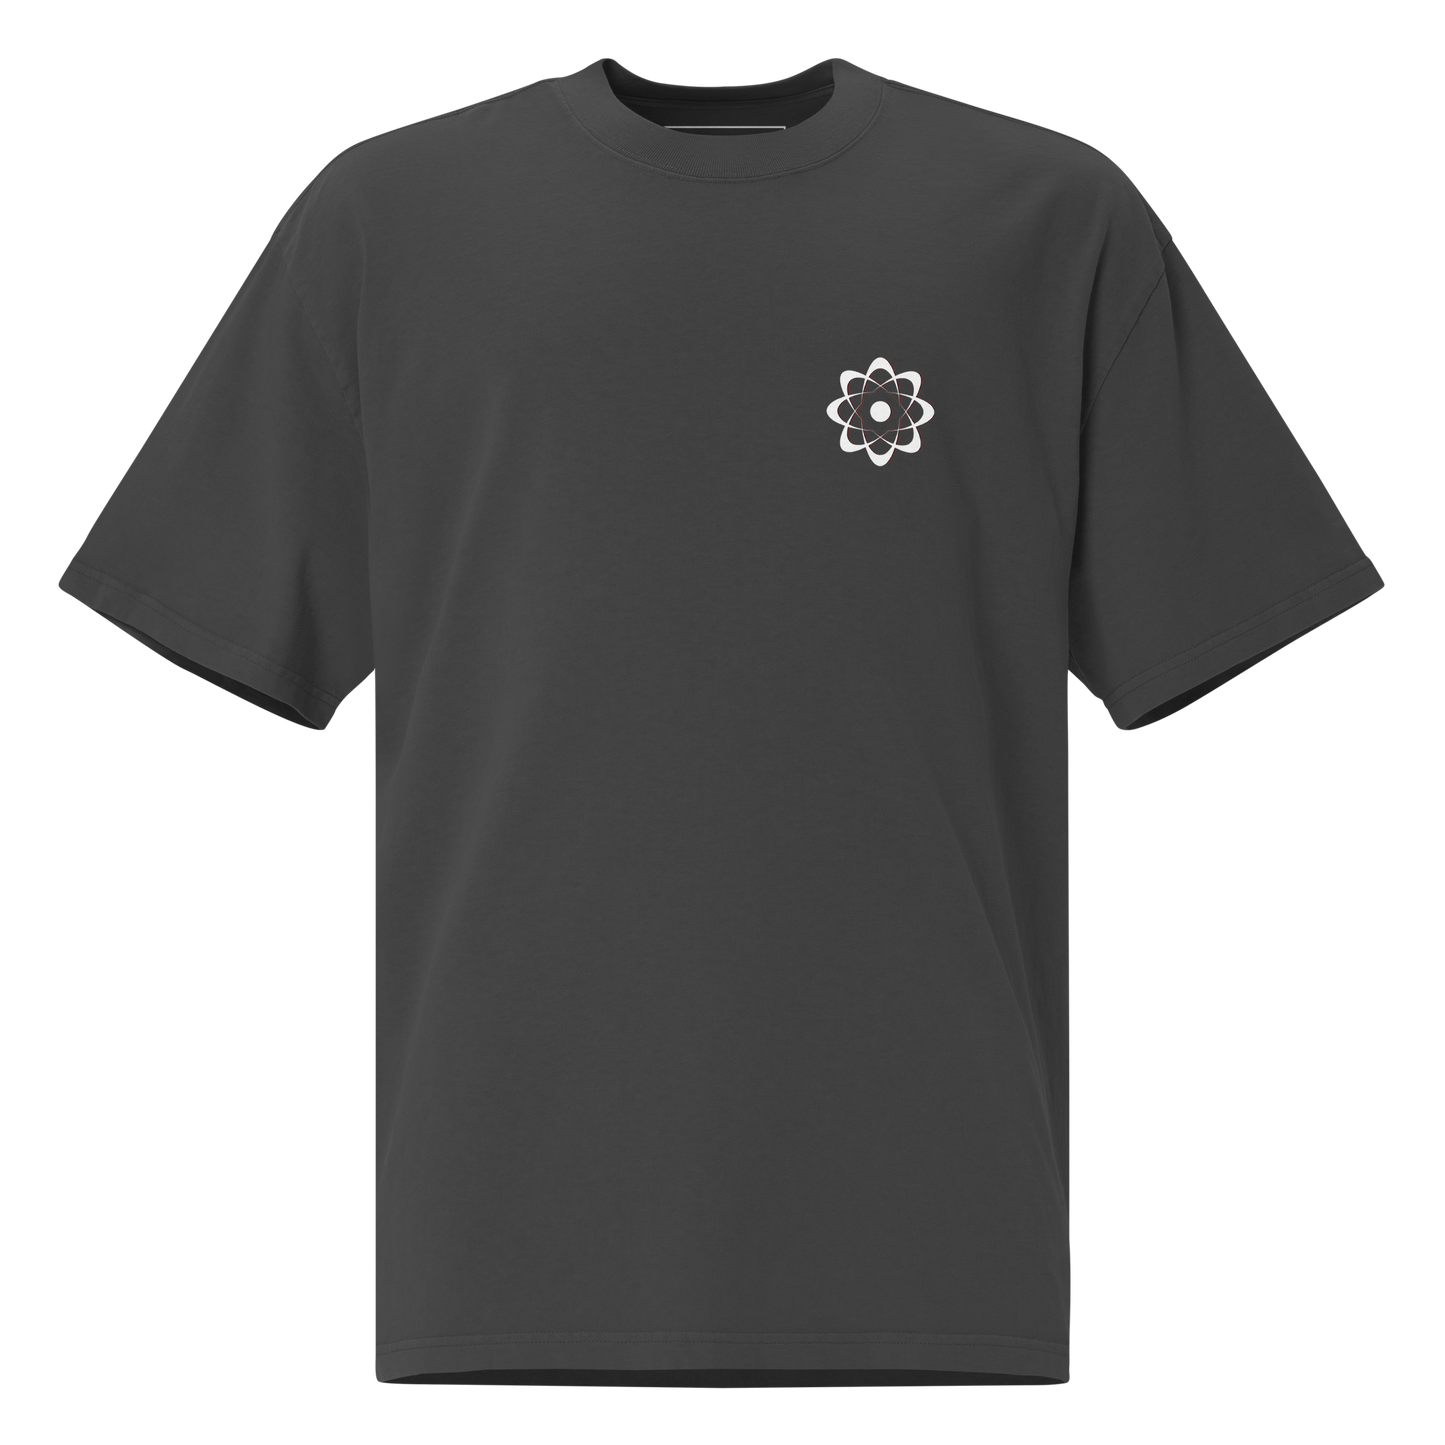 ELYSIUM "NEUTRON" Oversized t-shirt